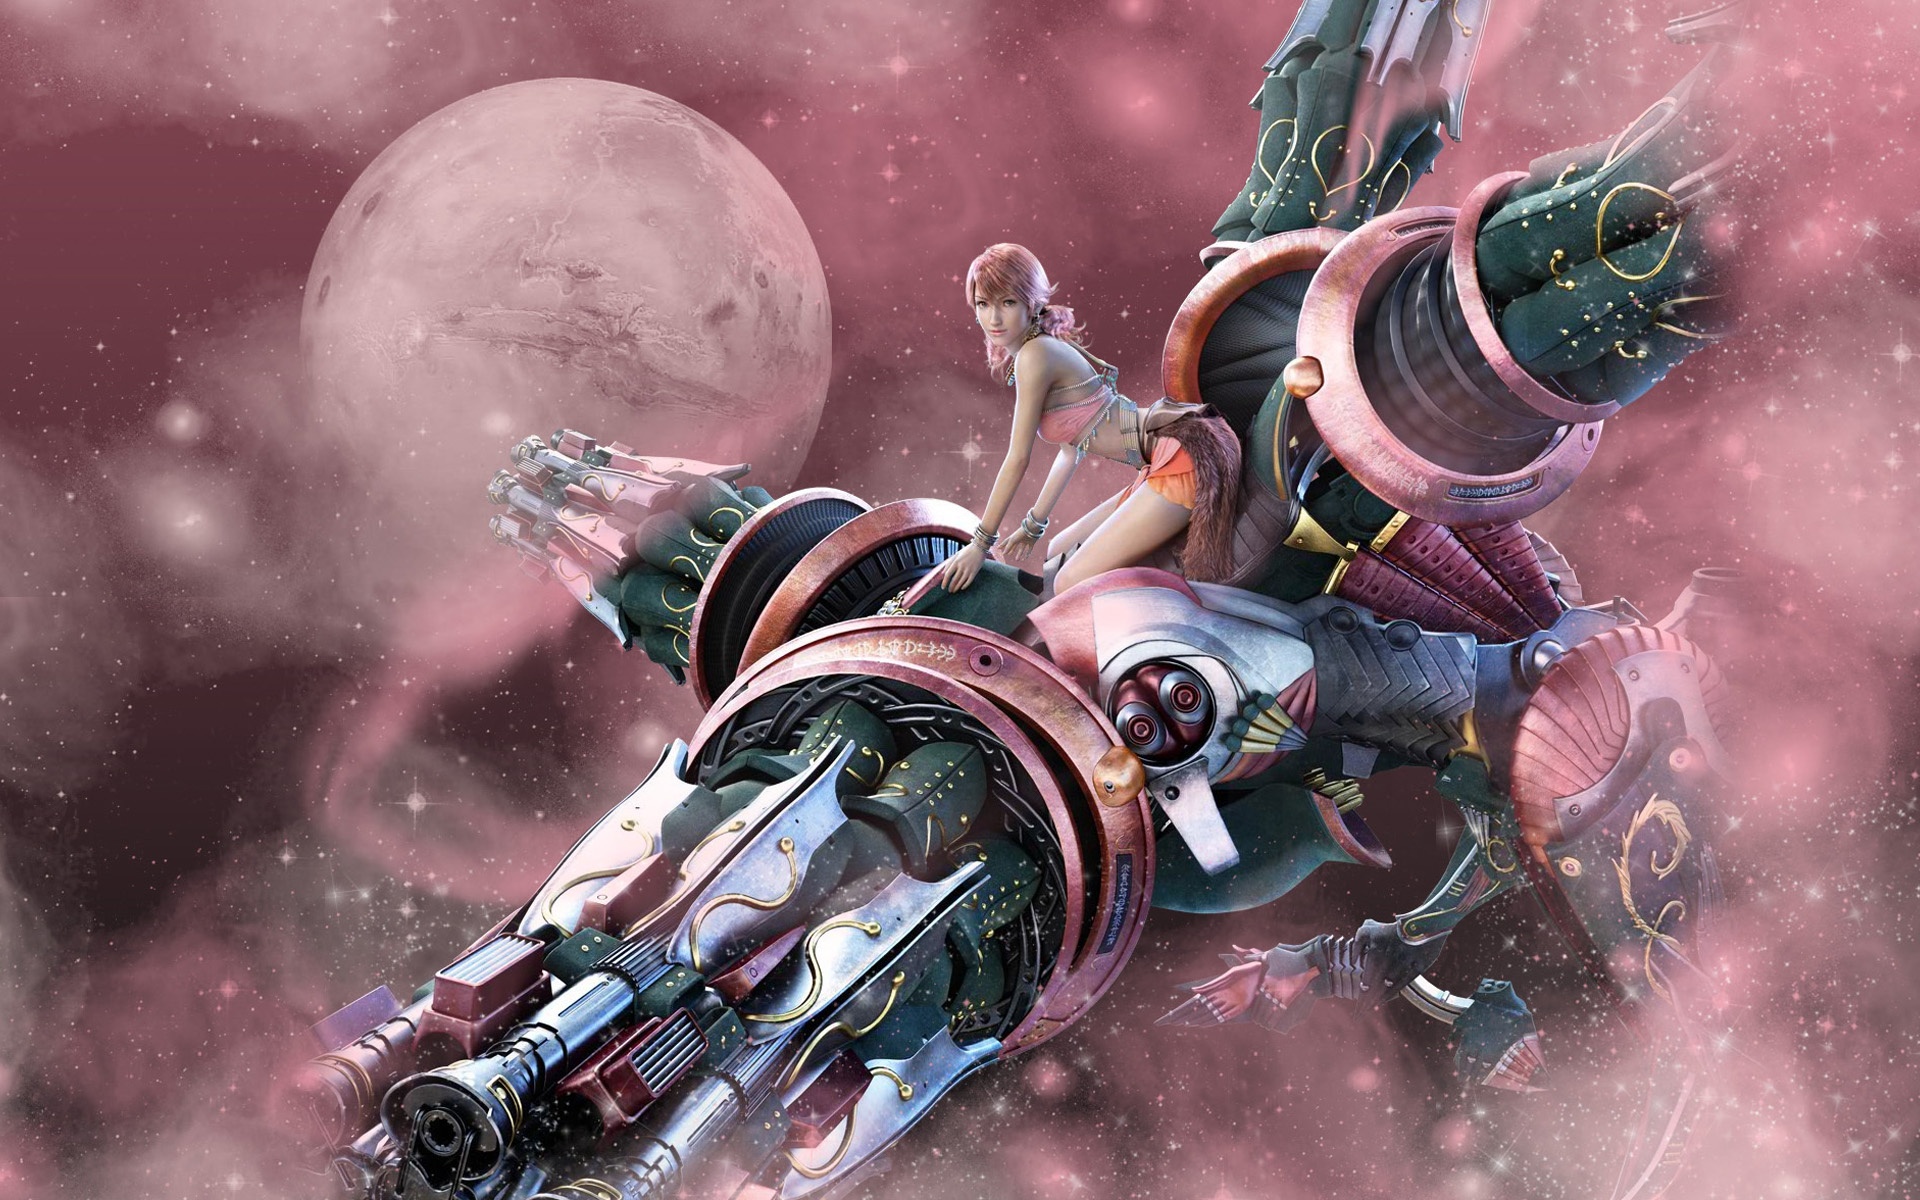 Final Fantasy Xiii Pink Hair Girl Wallpaper Games Wallpaper Better